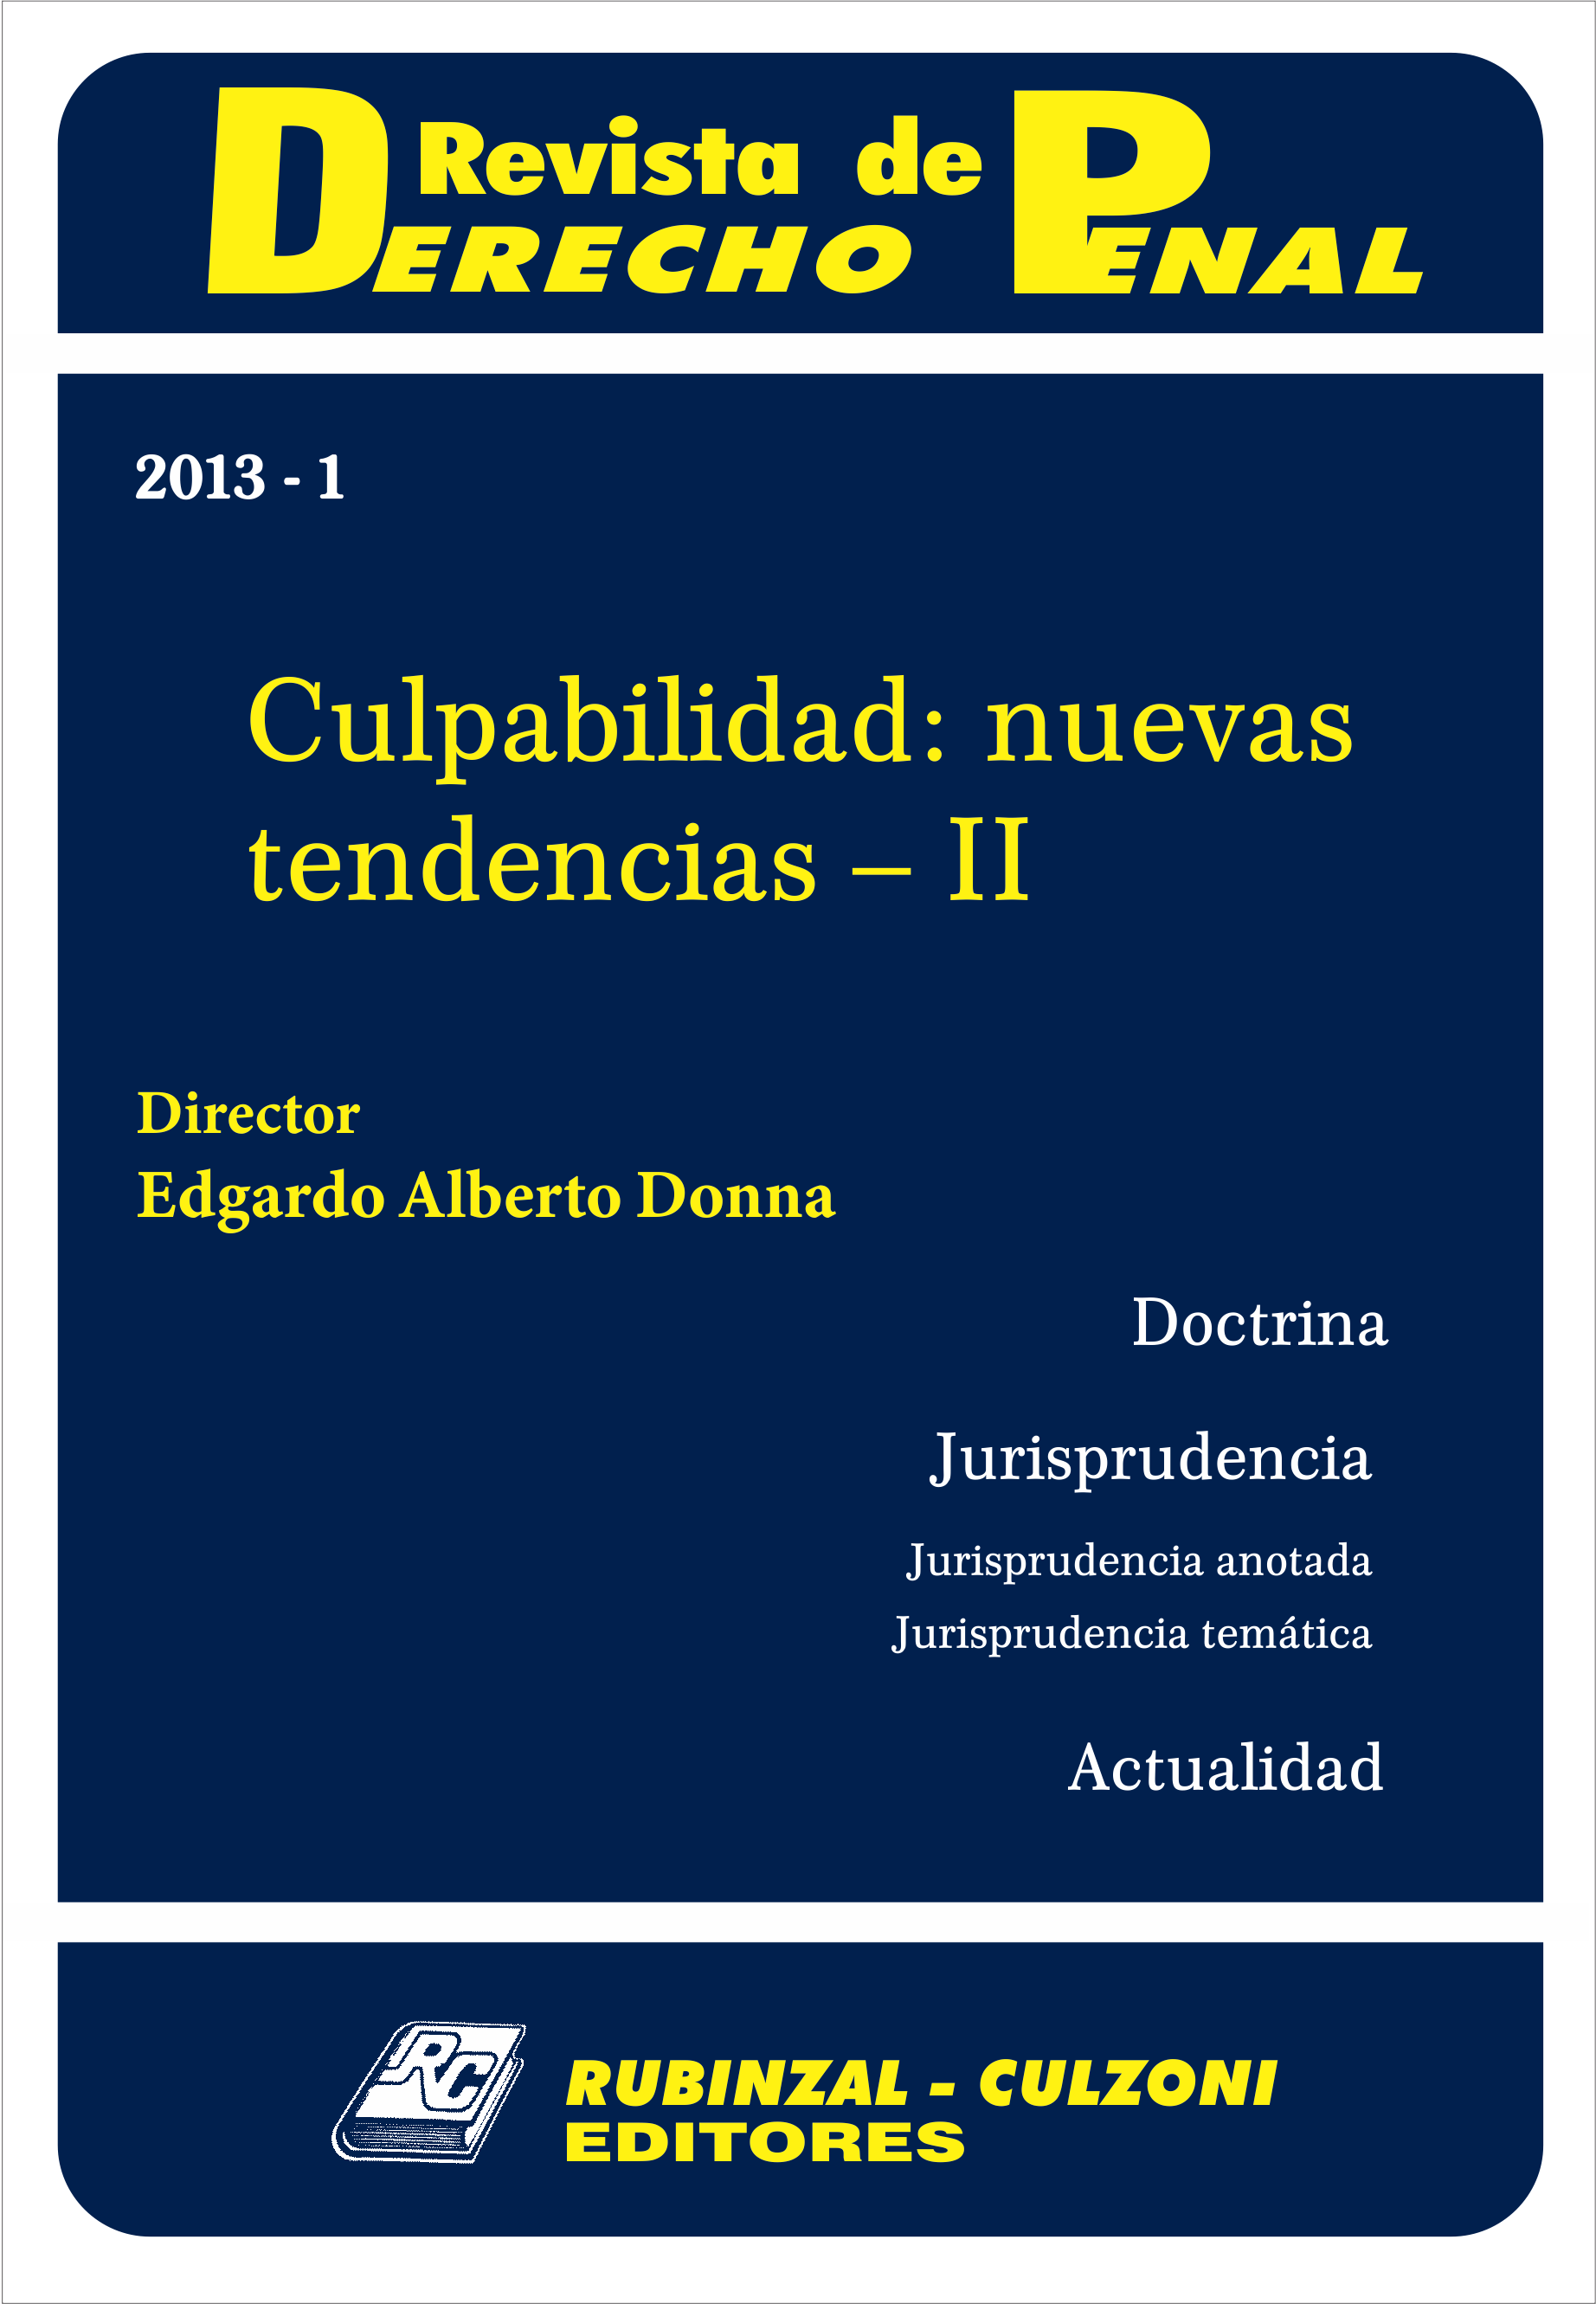 Revista de Derecho Penal - Culpabilidad: nuevas tendencias - II.